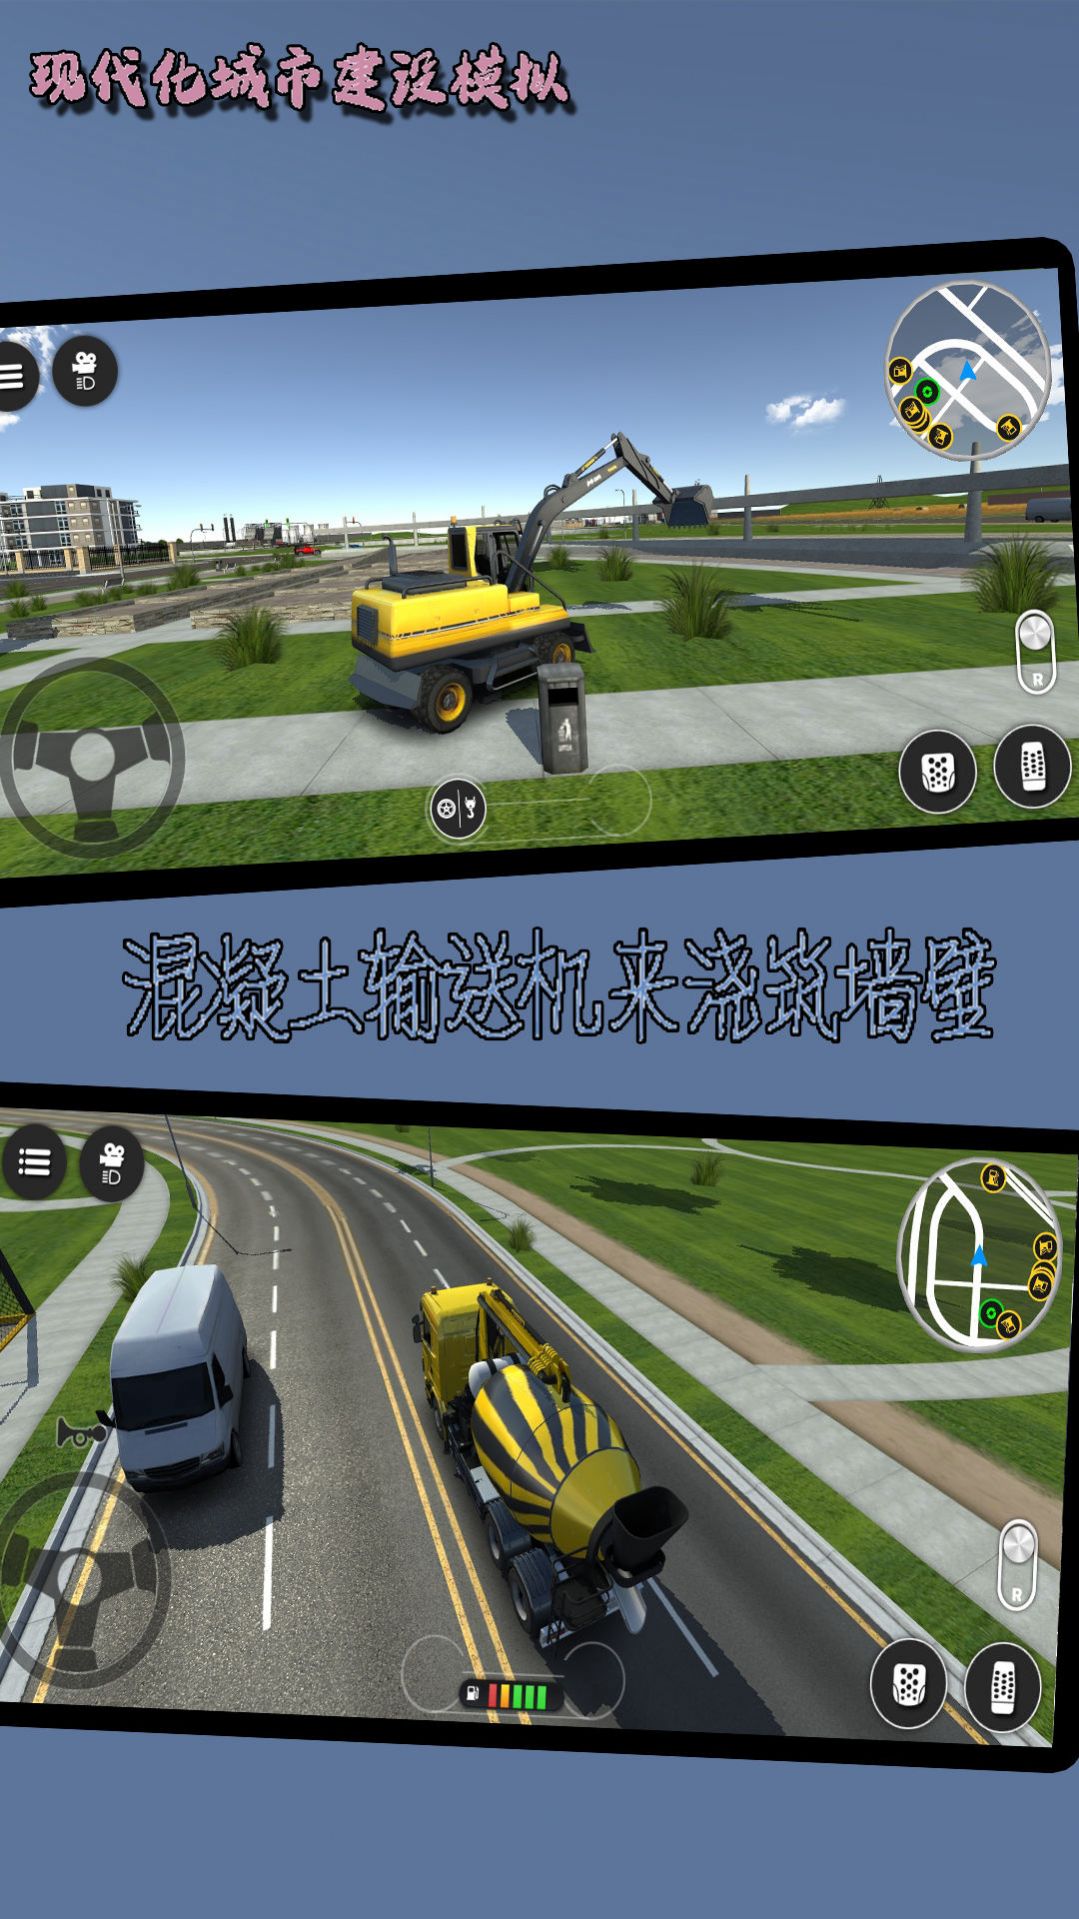 现代化城市建设模拟游戏手机版  v1021.101.10图1